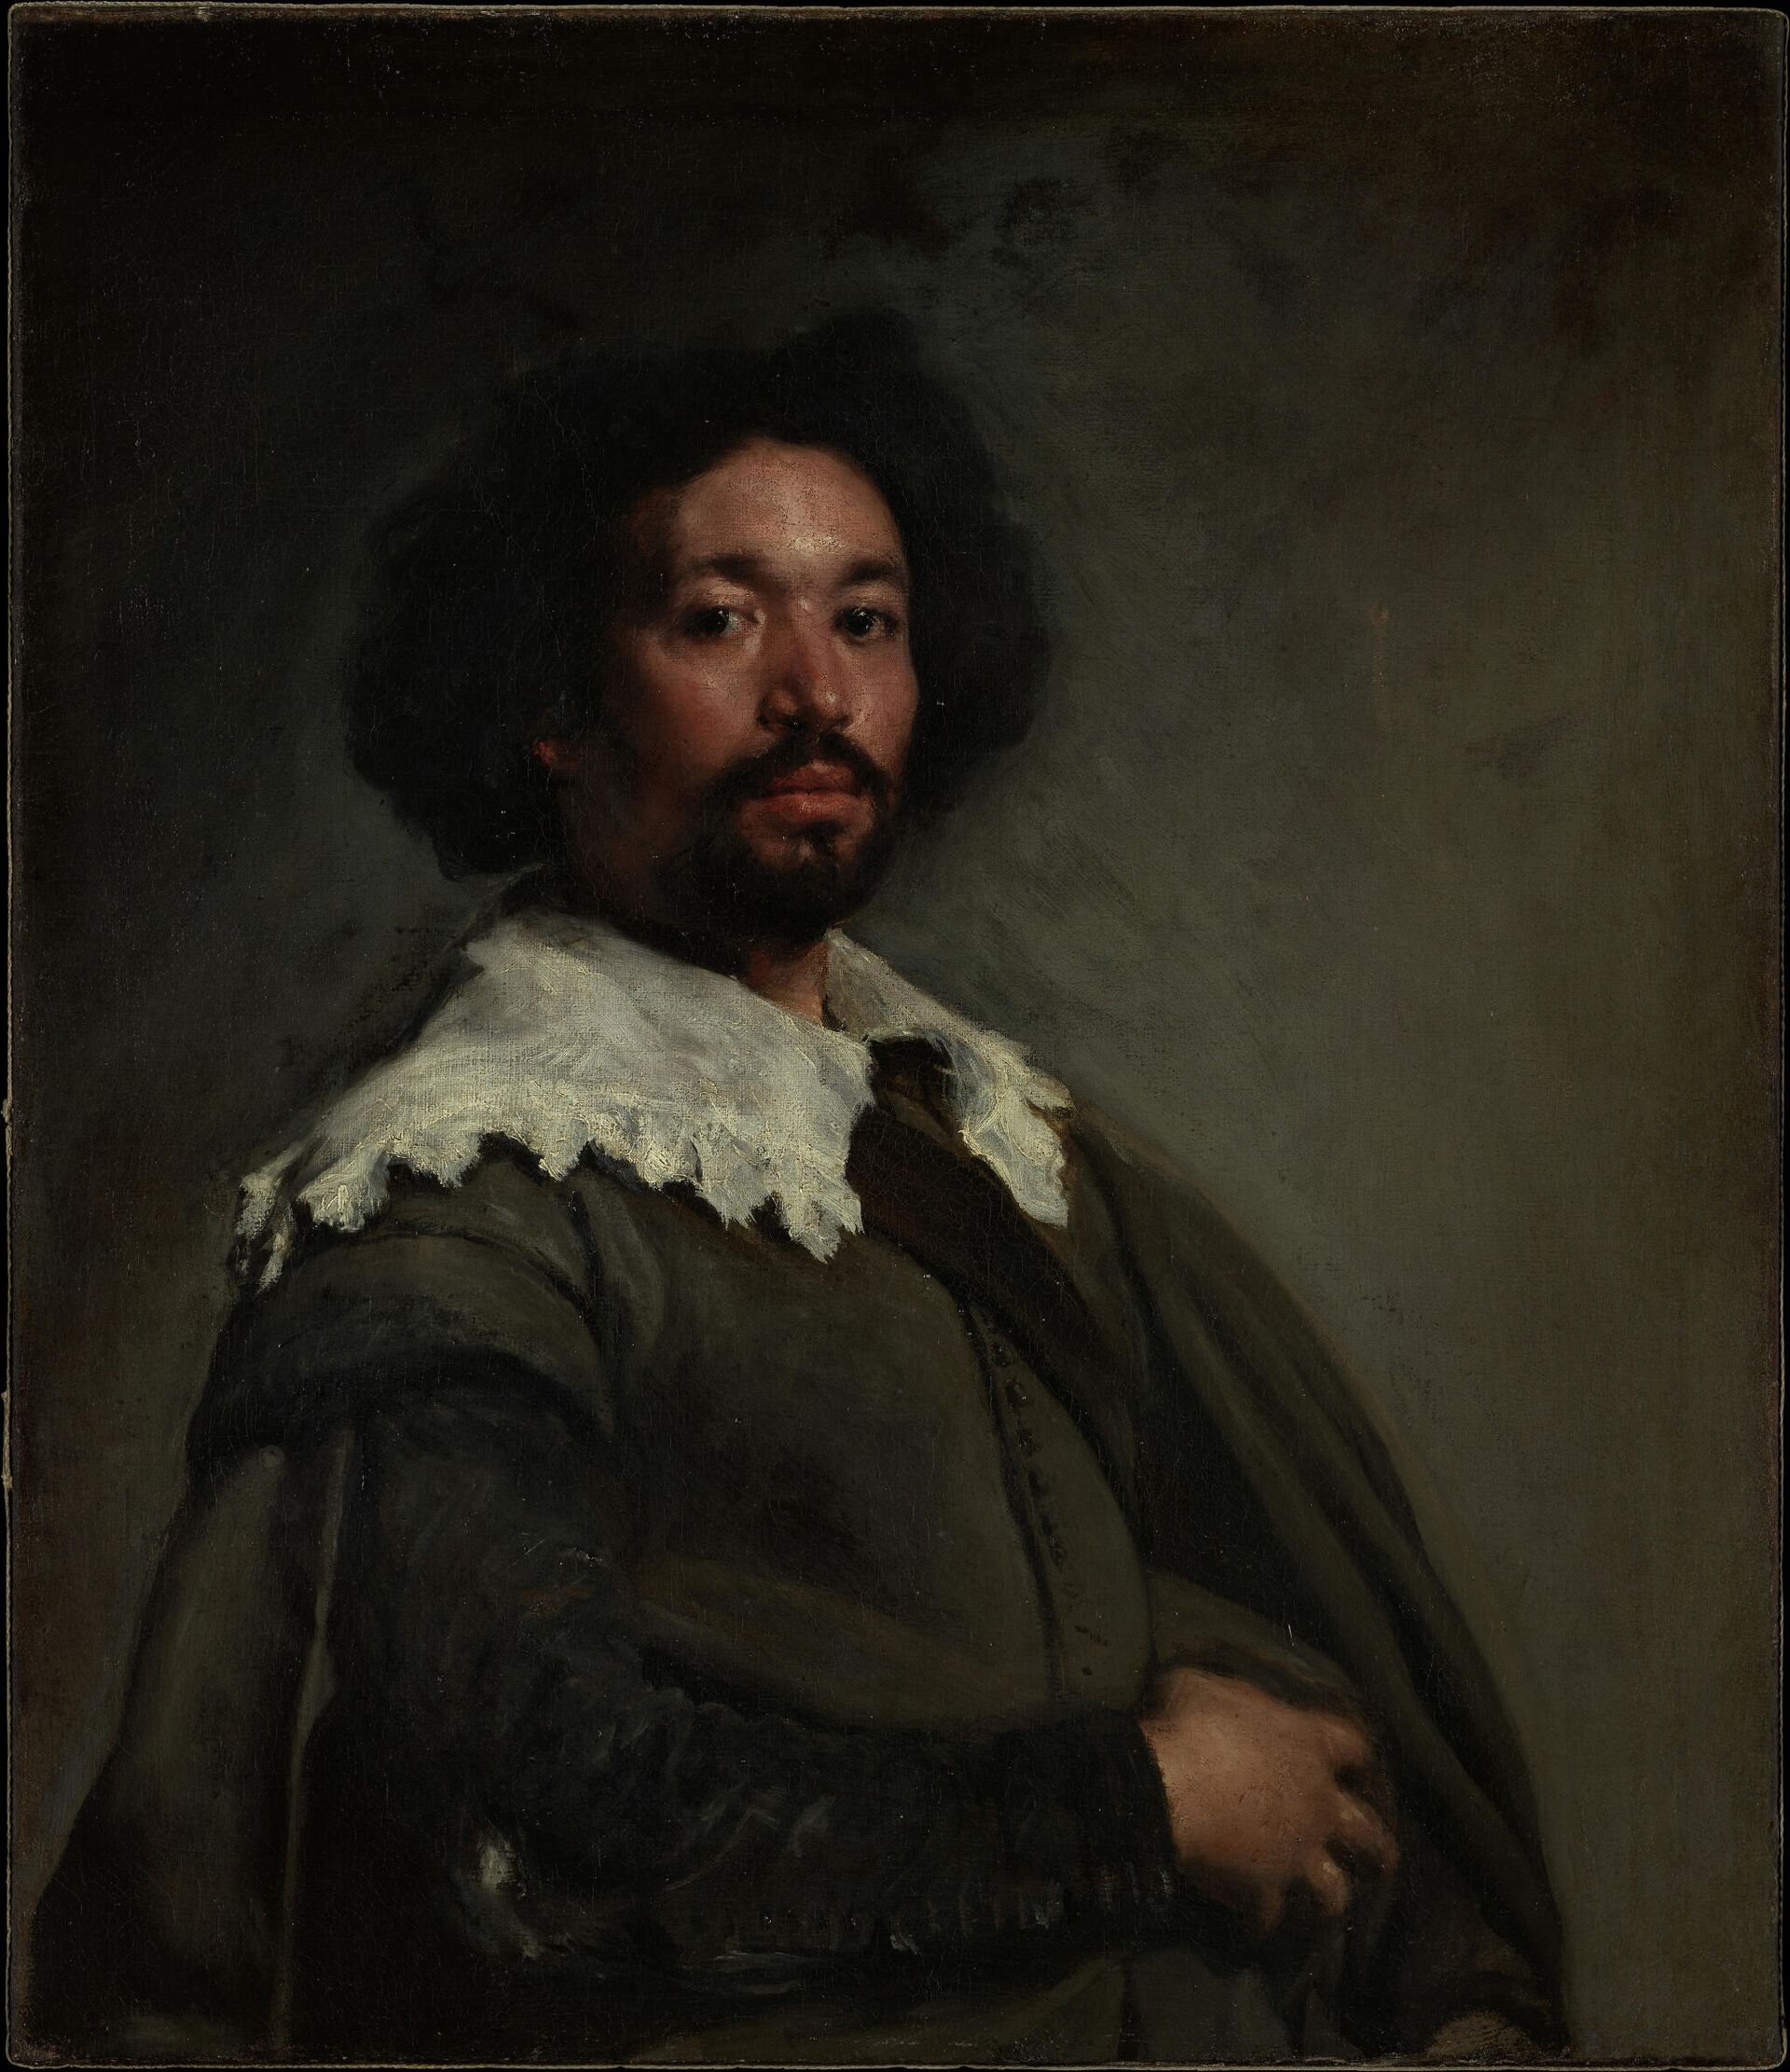 Diego Velázquez retrató a su esclavo, Juan de Pareja - Sputnik Mundo, 1920, 27.03.2021